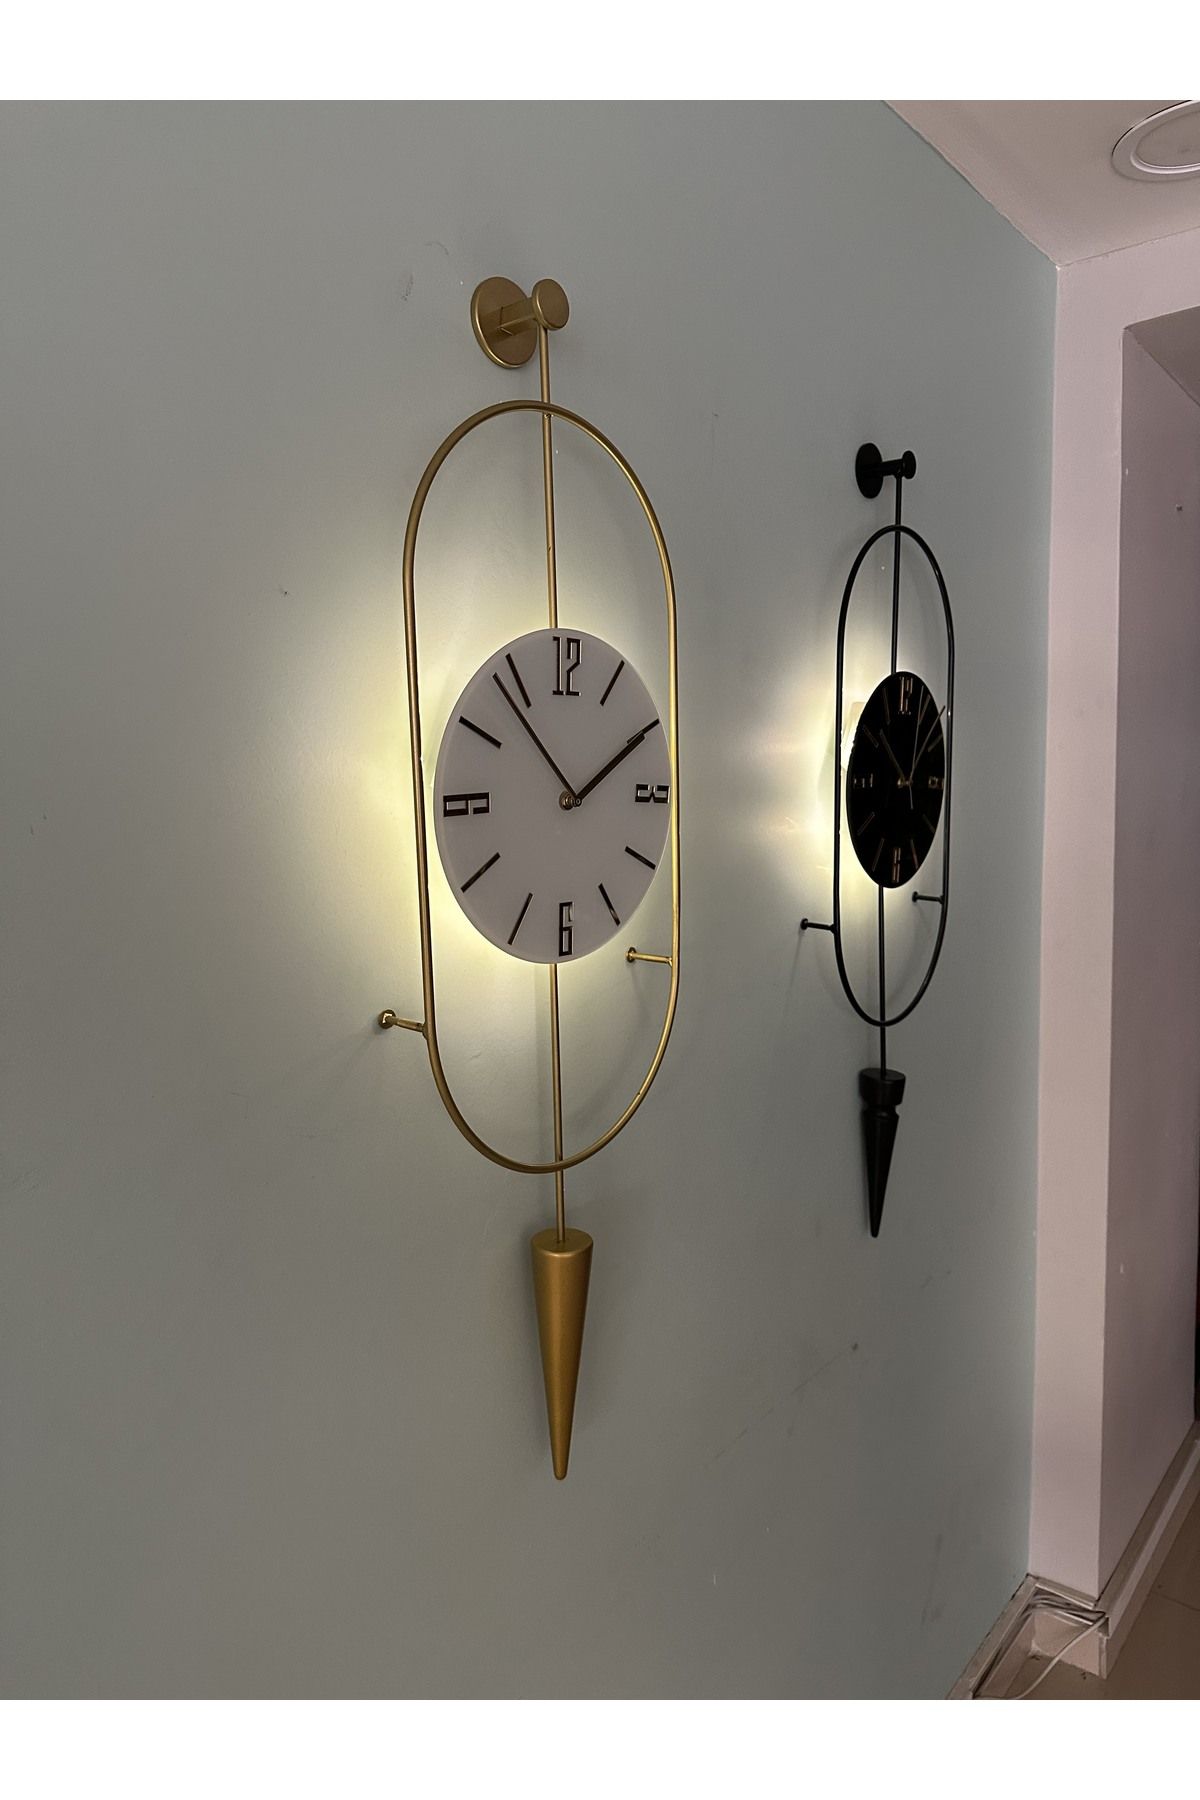 MetaQuartz Aksesuar Gold Ledli Serenity Pendulum Duvar Saati , Modern Dekoratif Metal Camlı Duvar Saati